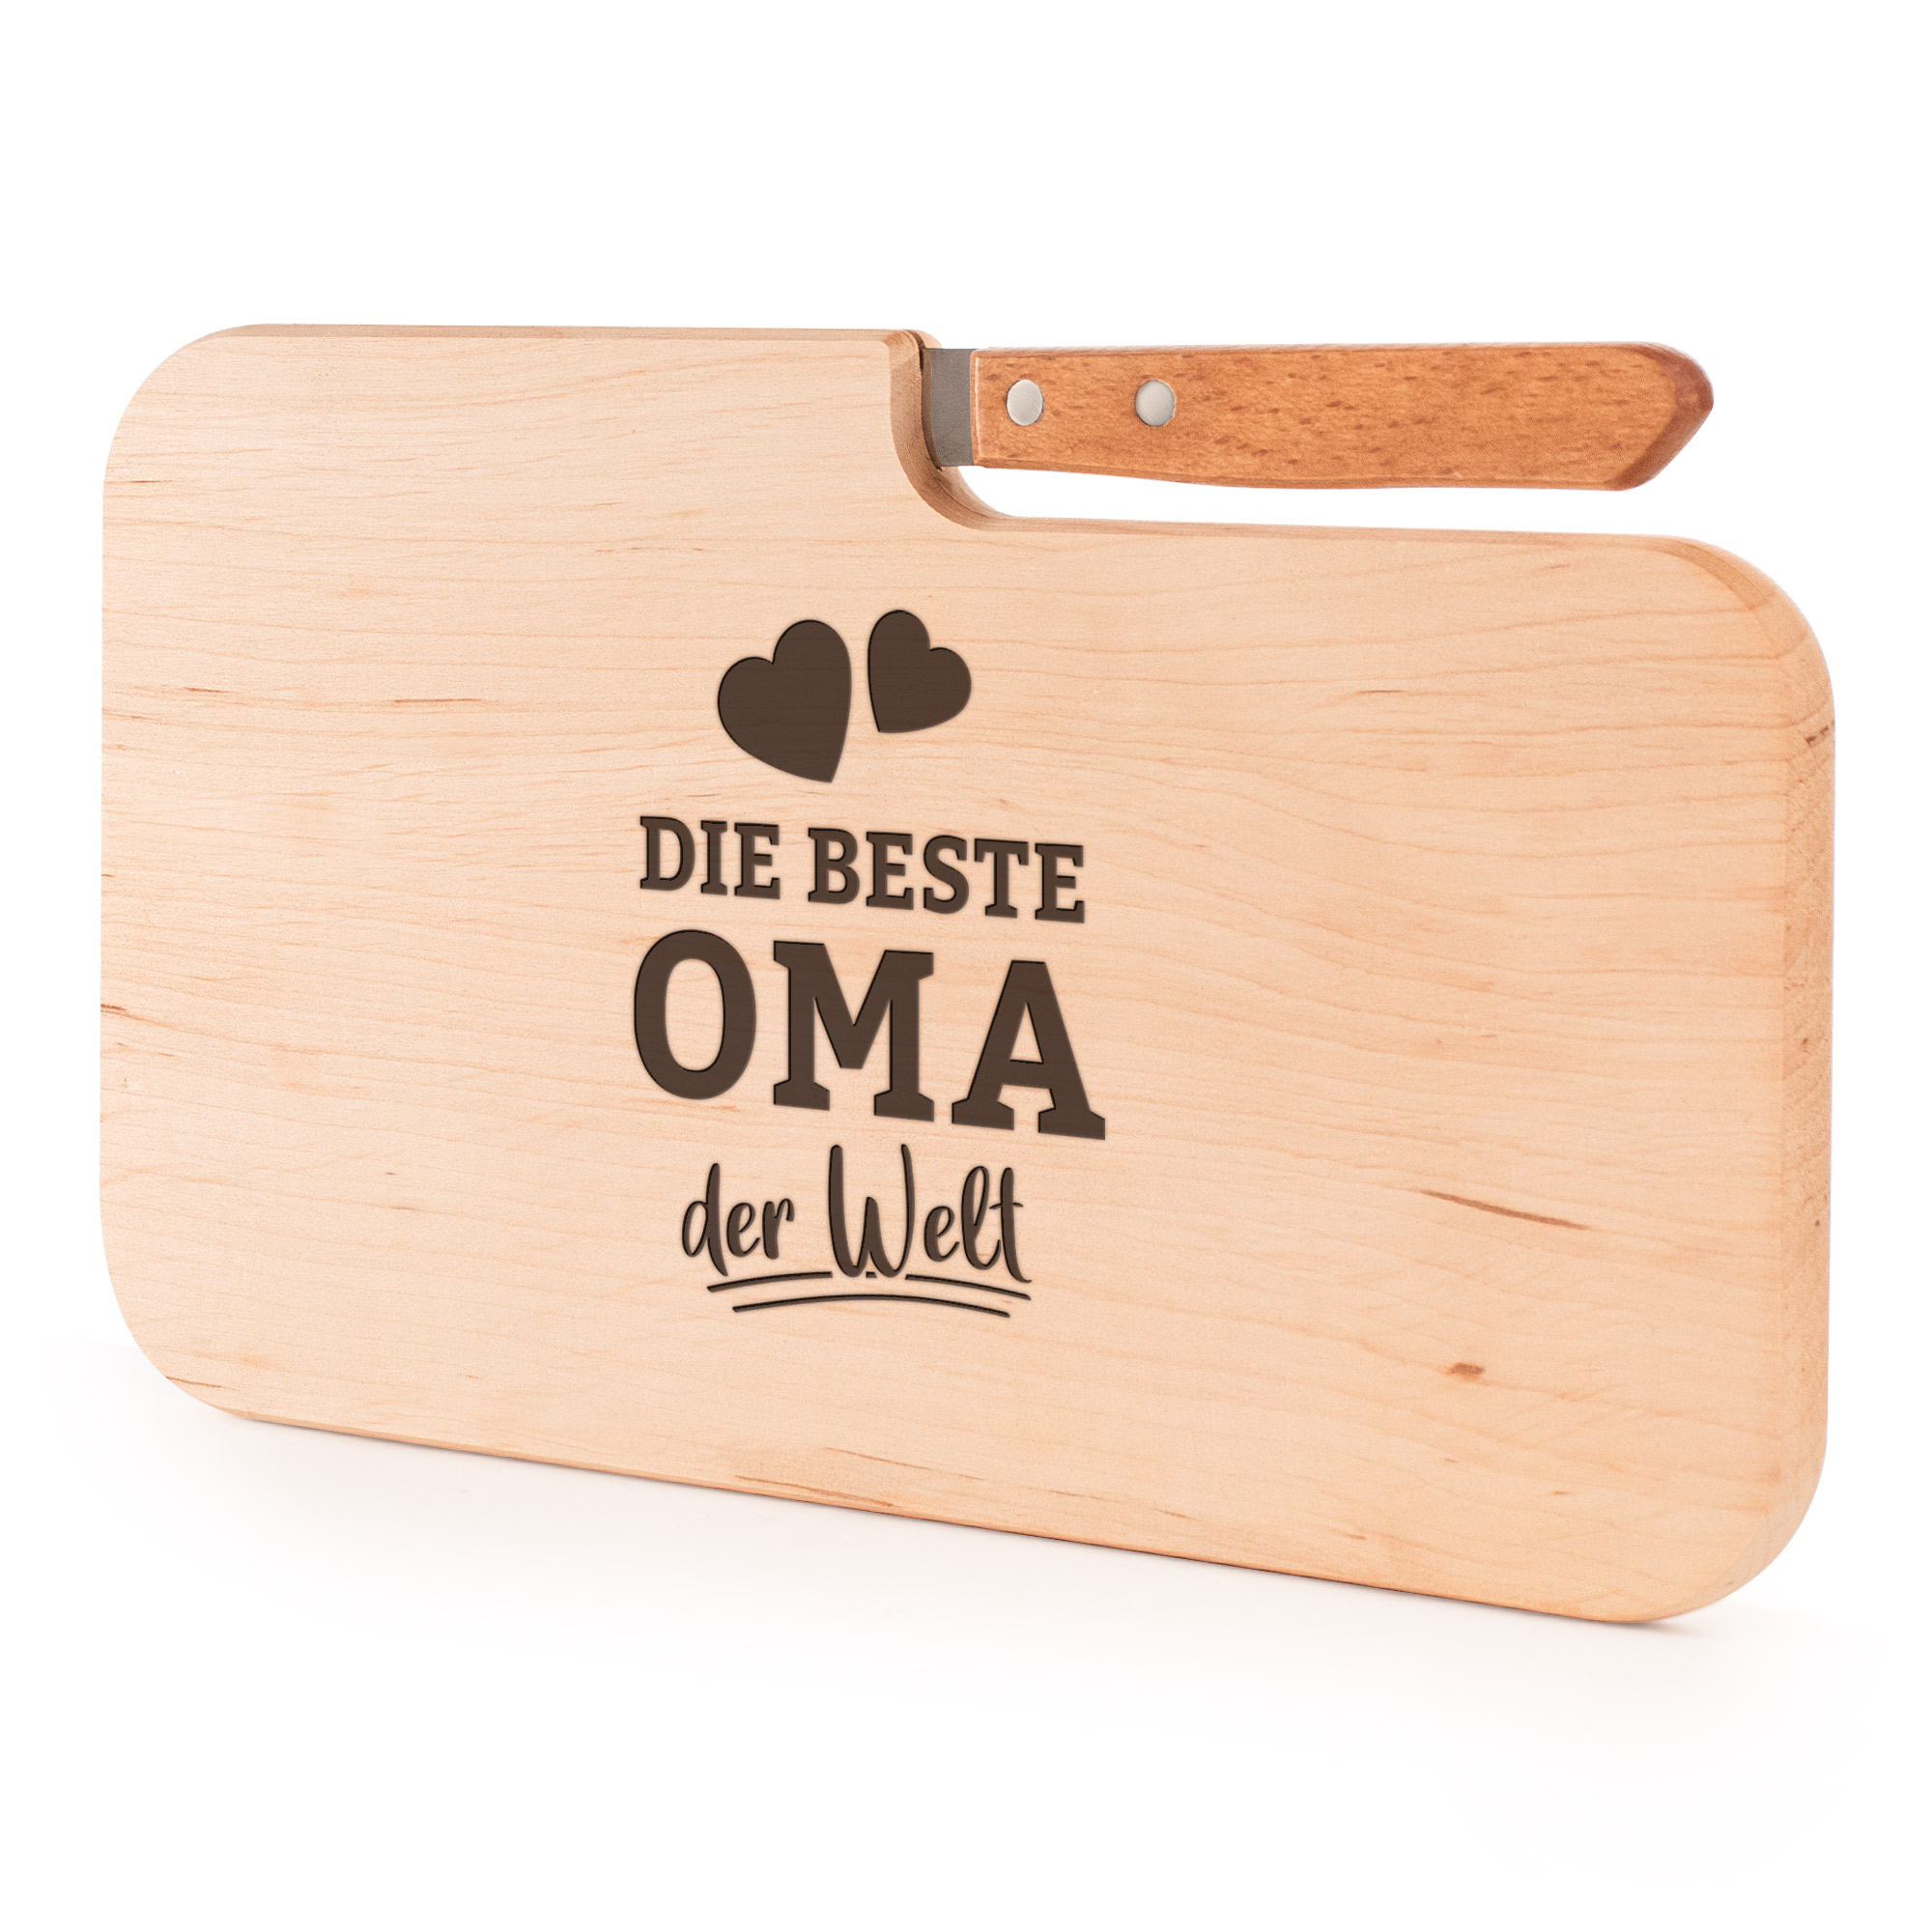 Holz Schneideblock mit Gravur, Servierbrett mit integriertem Messer, Holzbrett für die Küche, Küchenbrett als Geschenk für Oma